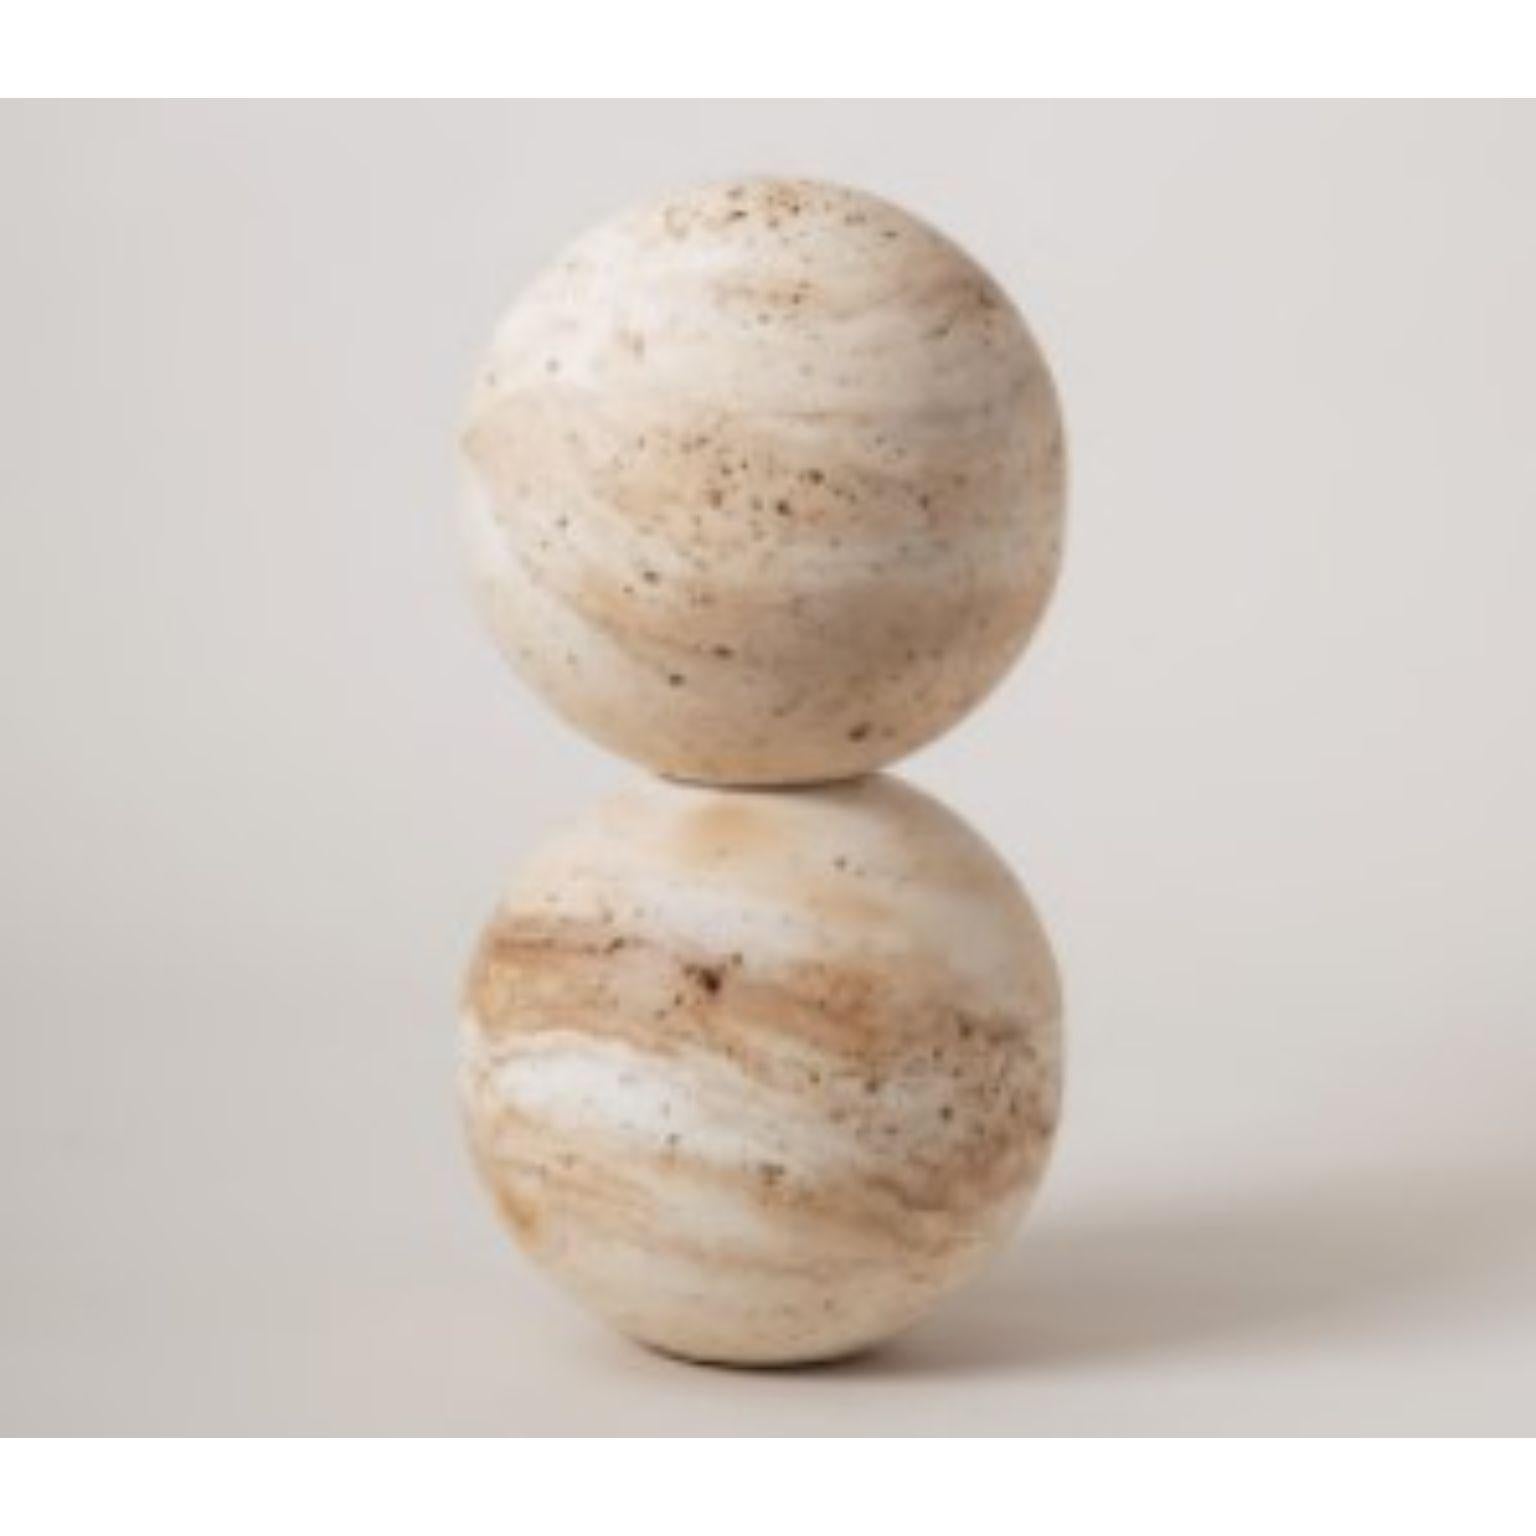 Jupiter 2 von Turbina
Archäologie der Zukunft
Abmessungen: Ø 19,5 cm x H 32 cm
MATERIALIEN: MDF

Das Projekt Jupiter geht von der Idee des Steins als Symbol der Heiligkeit aus. Daher ist Jupiter ein modulares Stück, das aus Kugeln und Halbkugeln